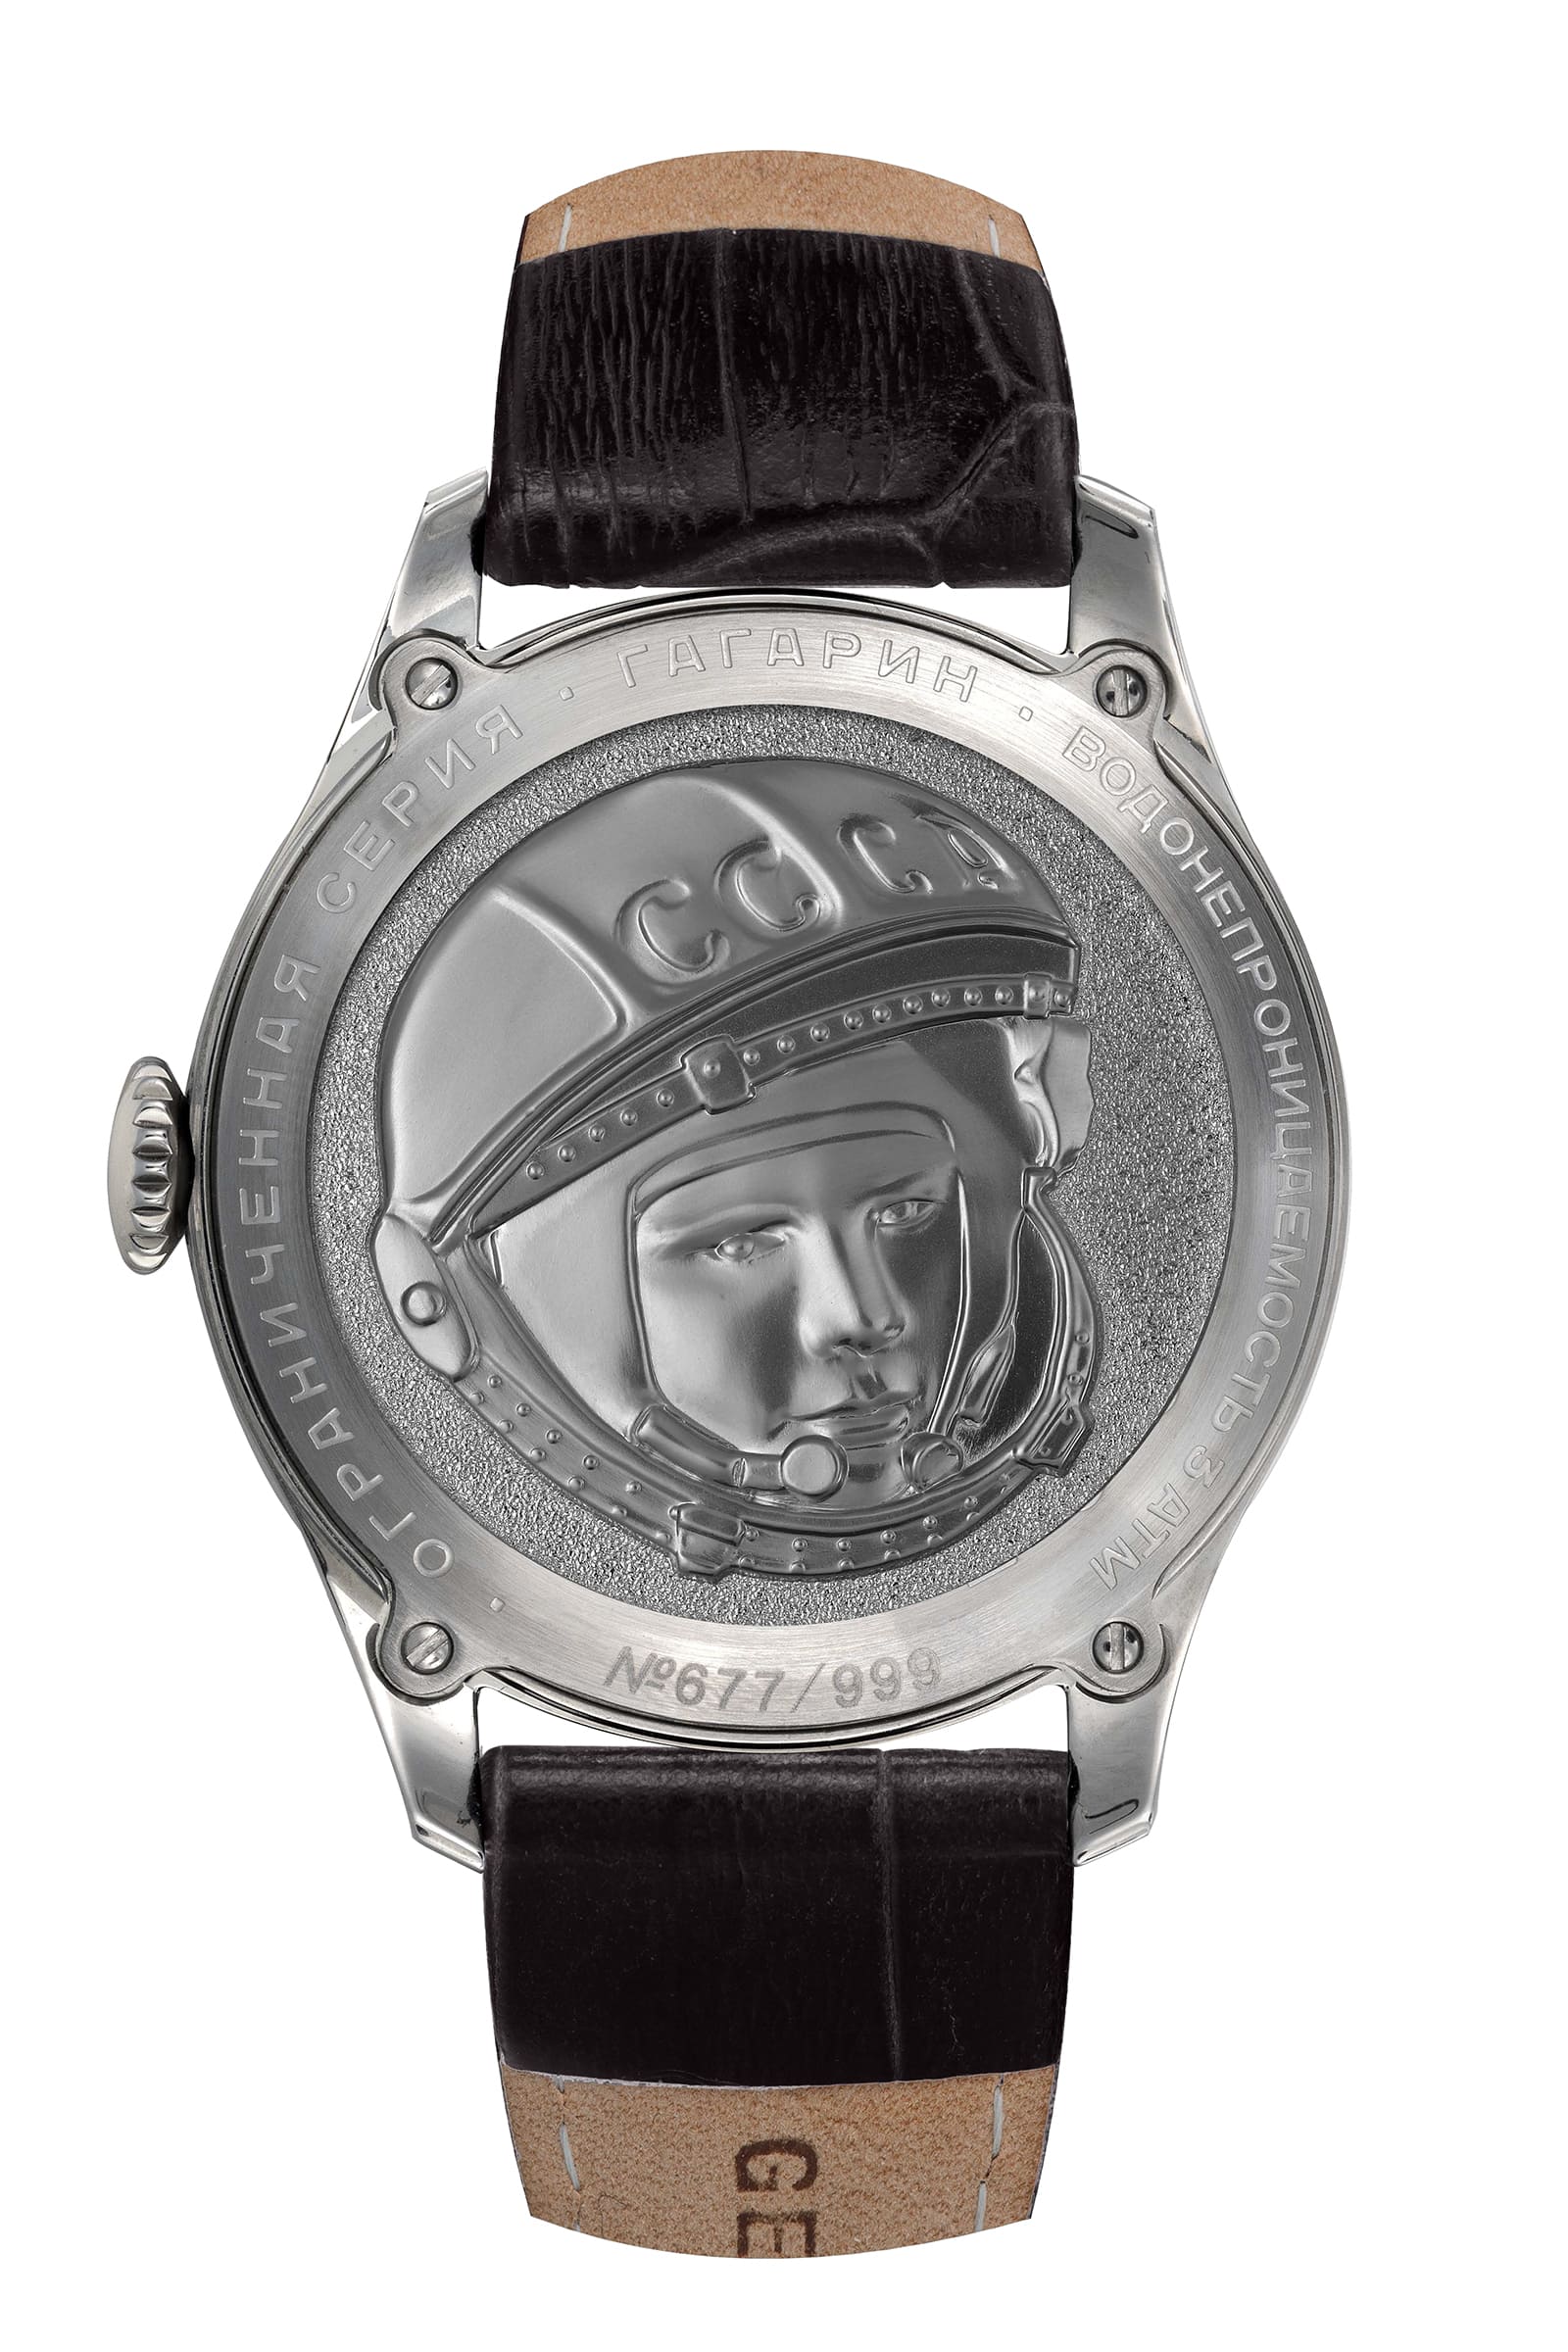  Sturmanskie Gagarin Vintage Retro 2609-3745200 